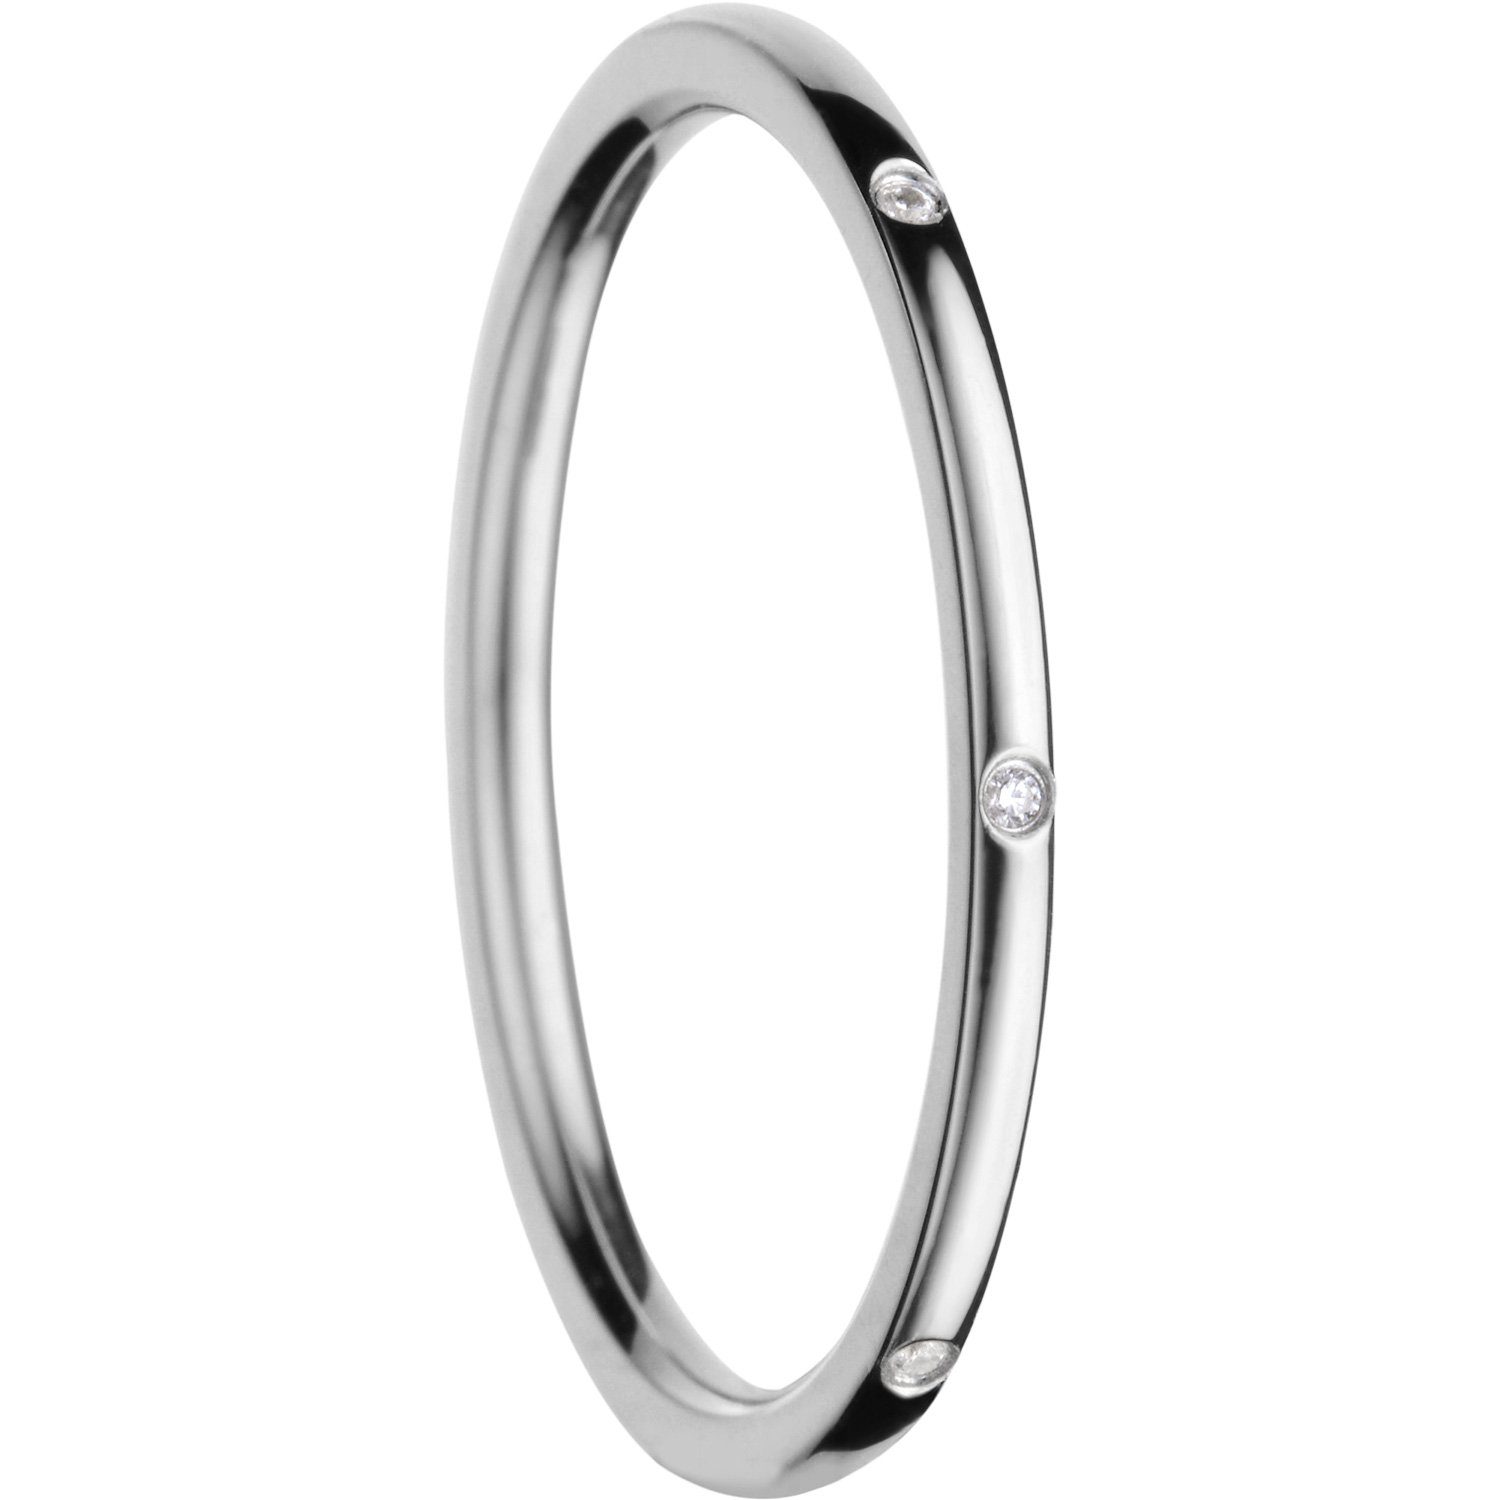 Bering Fingerring BERING / Detachable / Ring / Size 7 560-17-70 Silber